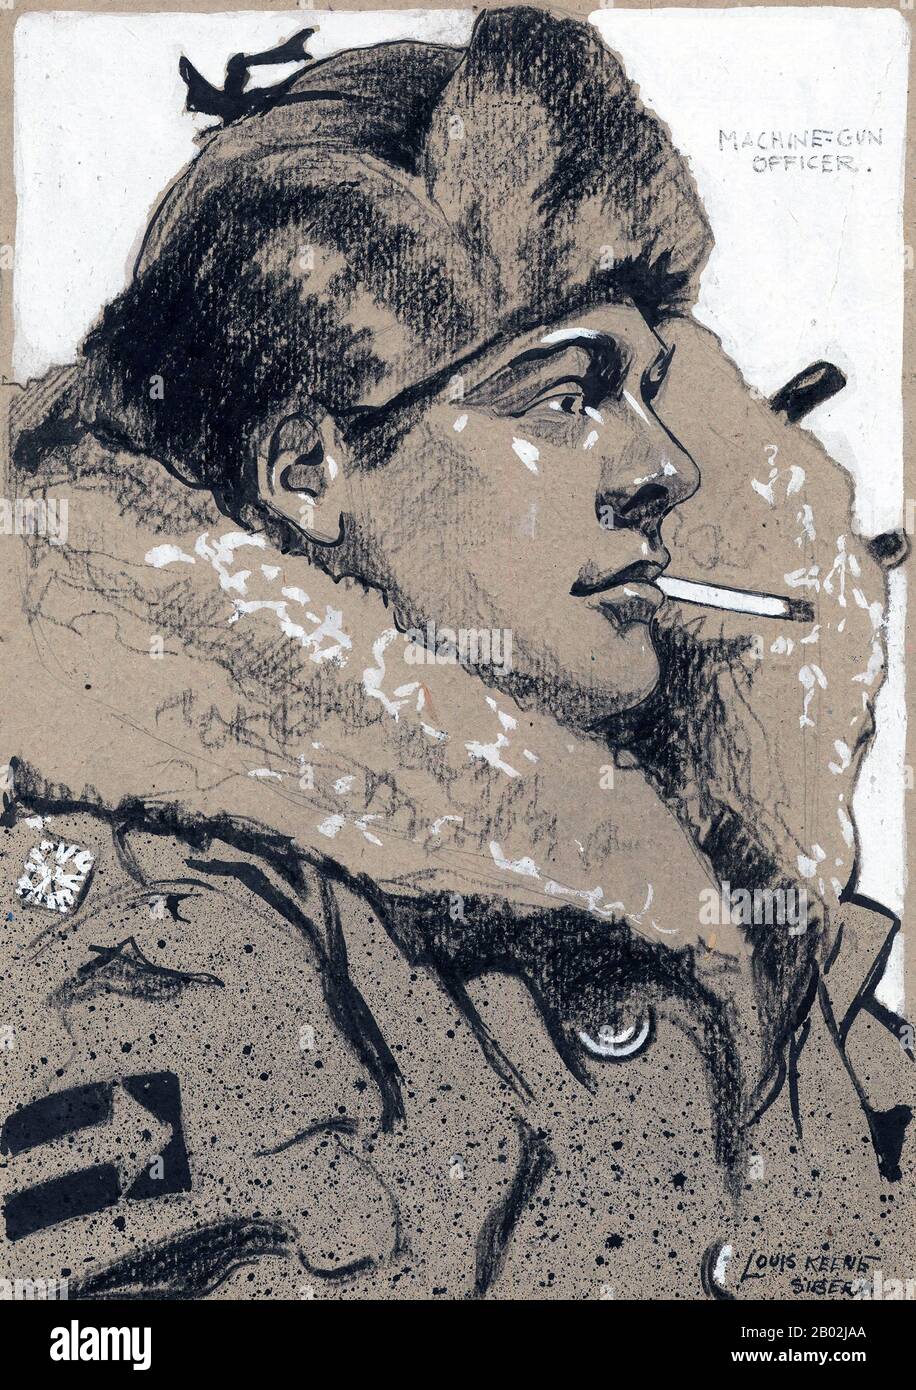 Die von Major General James H. Elmsley befehligte und im August 1918 autorisierte Canadian Siberian Expeditionary Force wurde nach Wladiwostok geschickt, um die dortige alliierte Präsenz zu verstärken. Die aus 4.192 Soldaten zusammengesetzte Truppe kehrte zwischen April und Juni 1919 nach Kanada zurück. Während dieser Zeit sahen die Kanadier wenig Kämpfe, wobei weniger als 100 Soldaten nach Omsk "aufmarschierten", um als Verwaltungsstab für 1.500 britische Truppen zu dienen, die der weißrussischen Regierung von Admiral Alexander Kolchak nahestagten. Die meisten Kanadier blieben in Wladiwostok und erhielten routinemäßige Drill- und Polizeiaufgaben im Vol Stockfoto